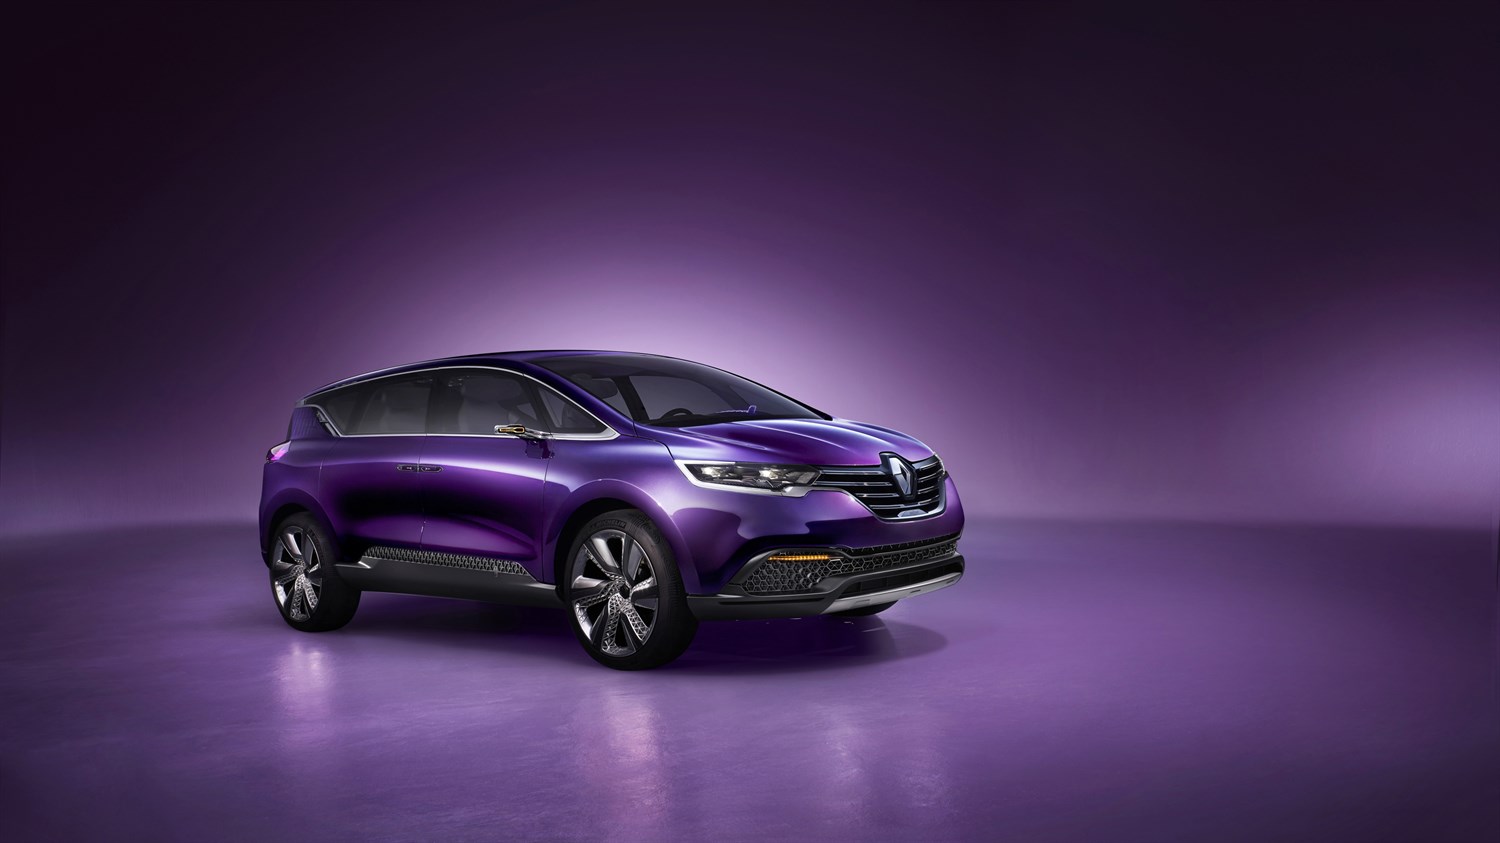 Renault INITIALE PARIS concept car exterior design side view